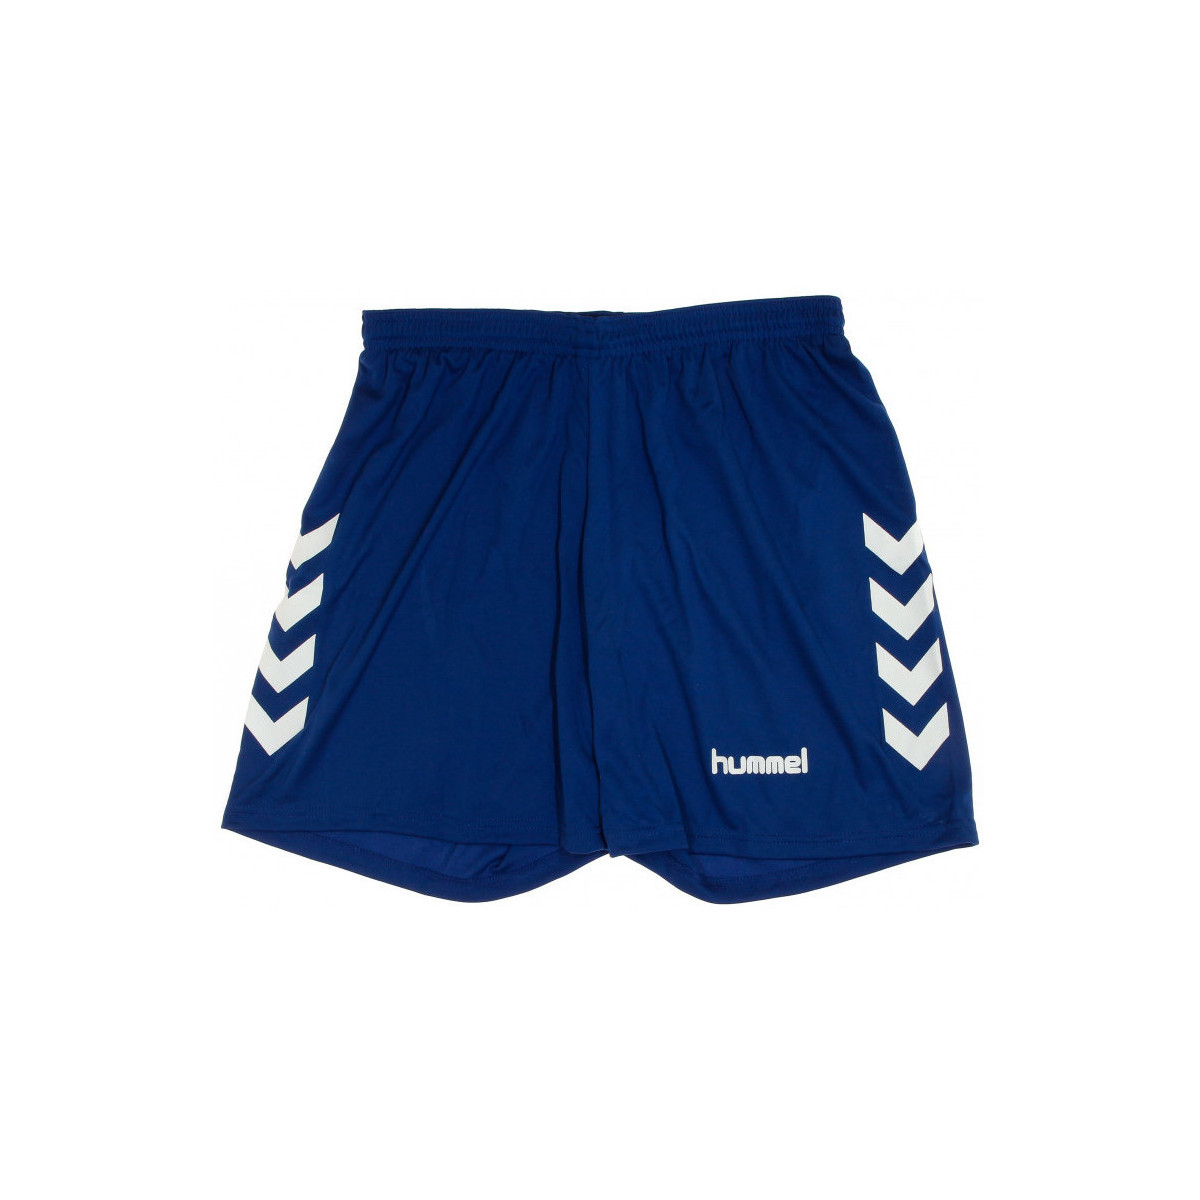 Vêtements Garçon Shorts / Bermudas hummel 405CHRYB Bleu